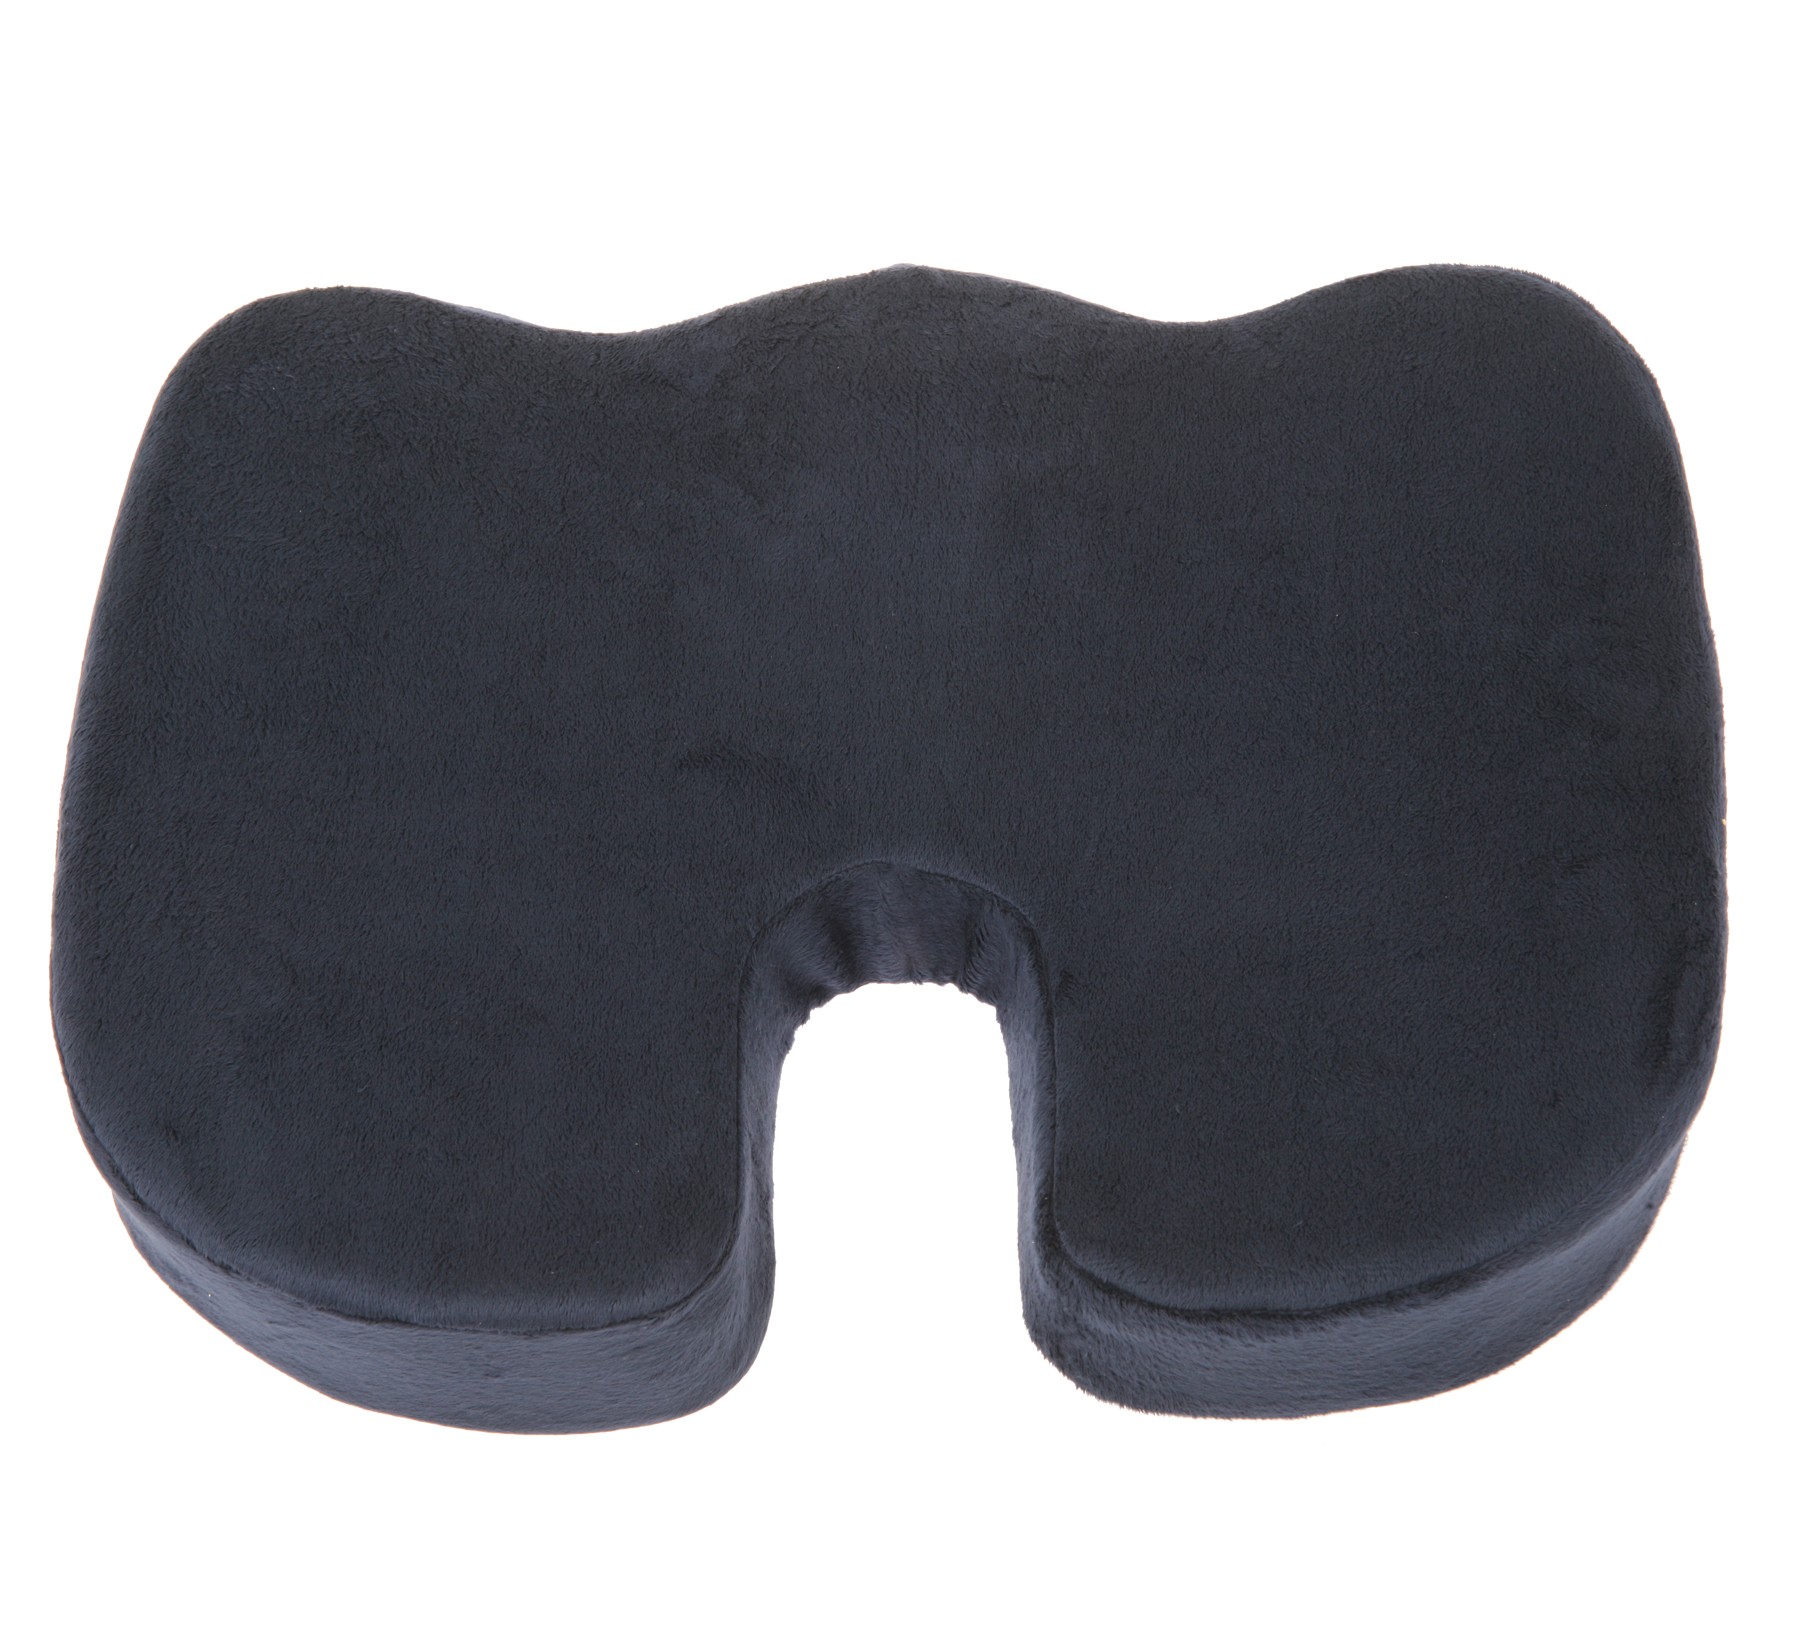 Coccyx Orthopedic Comfort Foam Seat Cushion